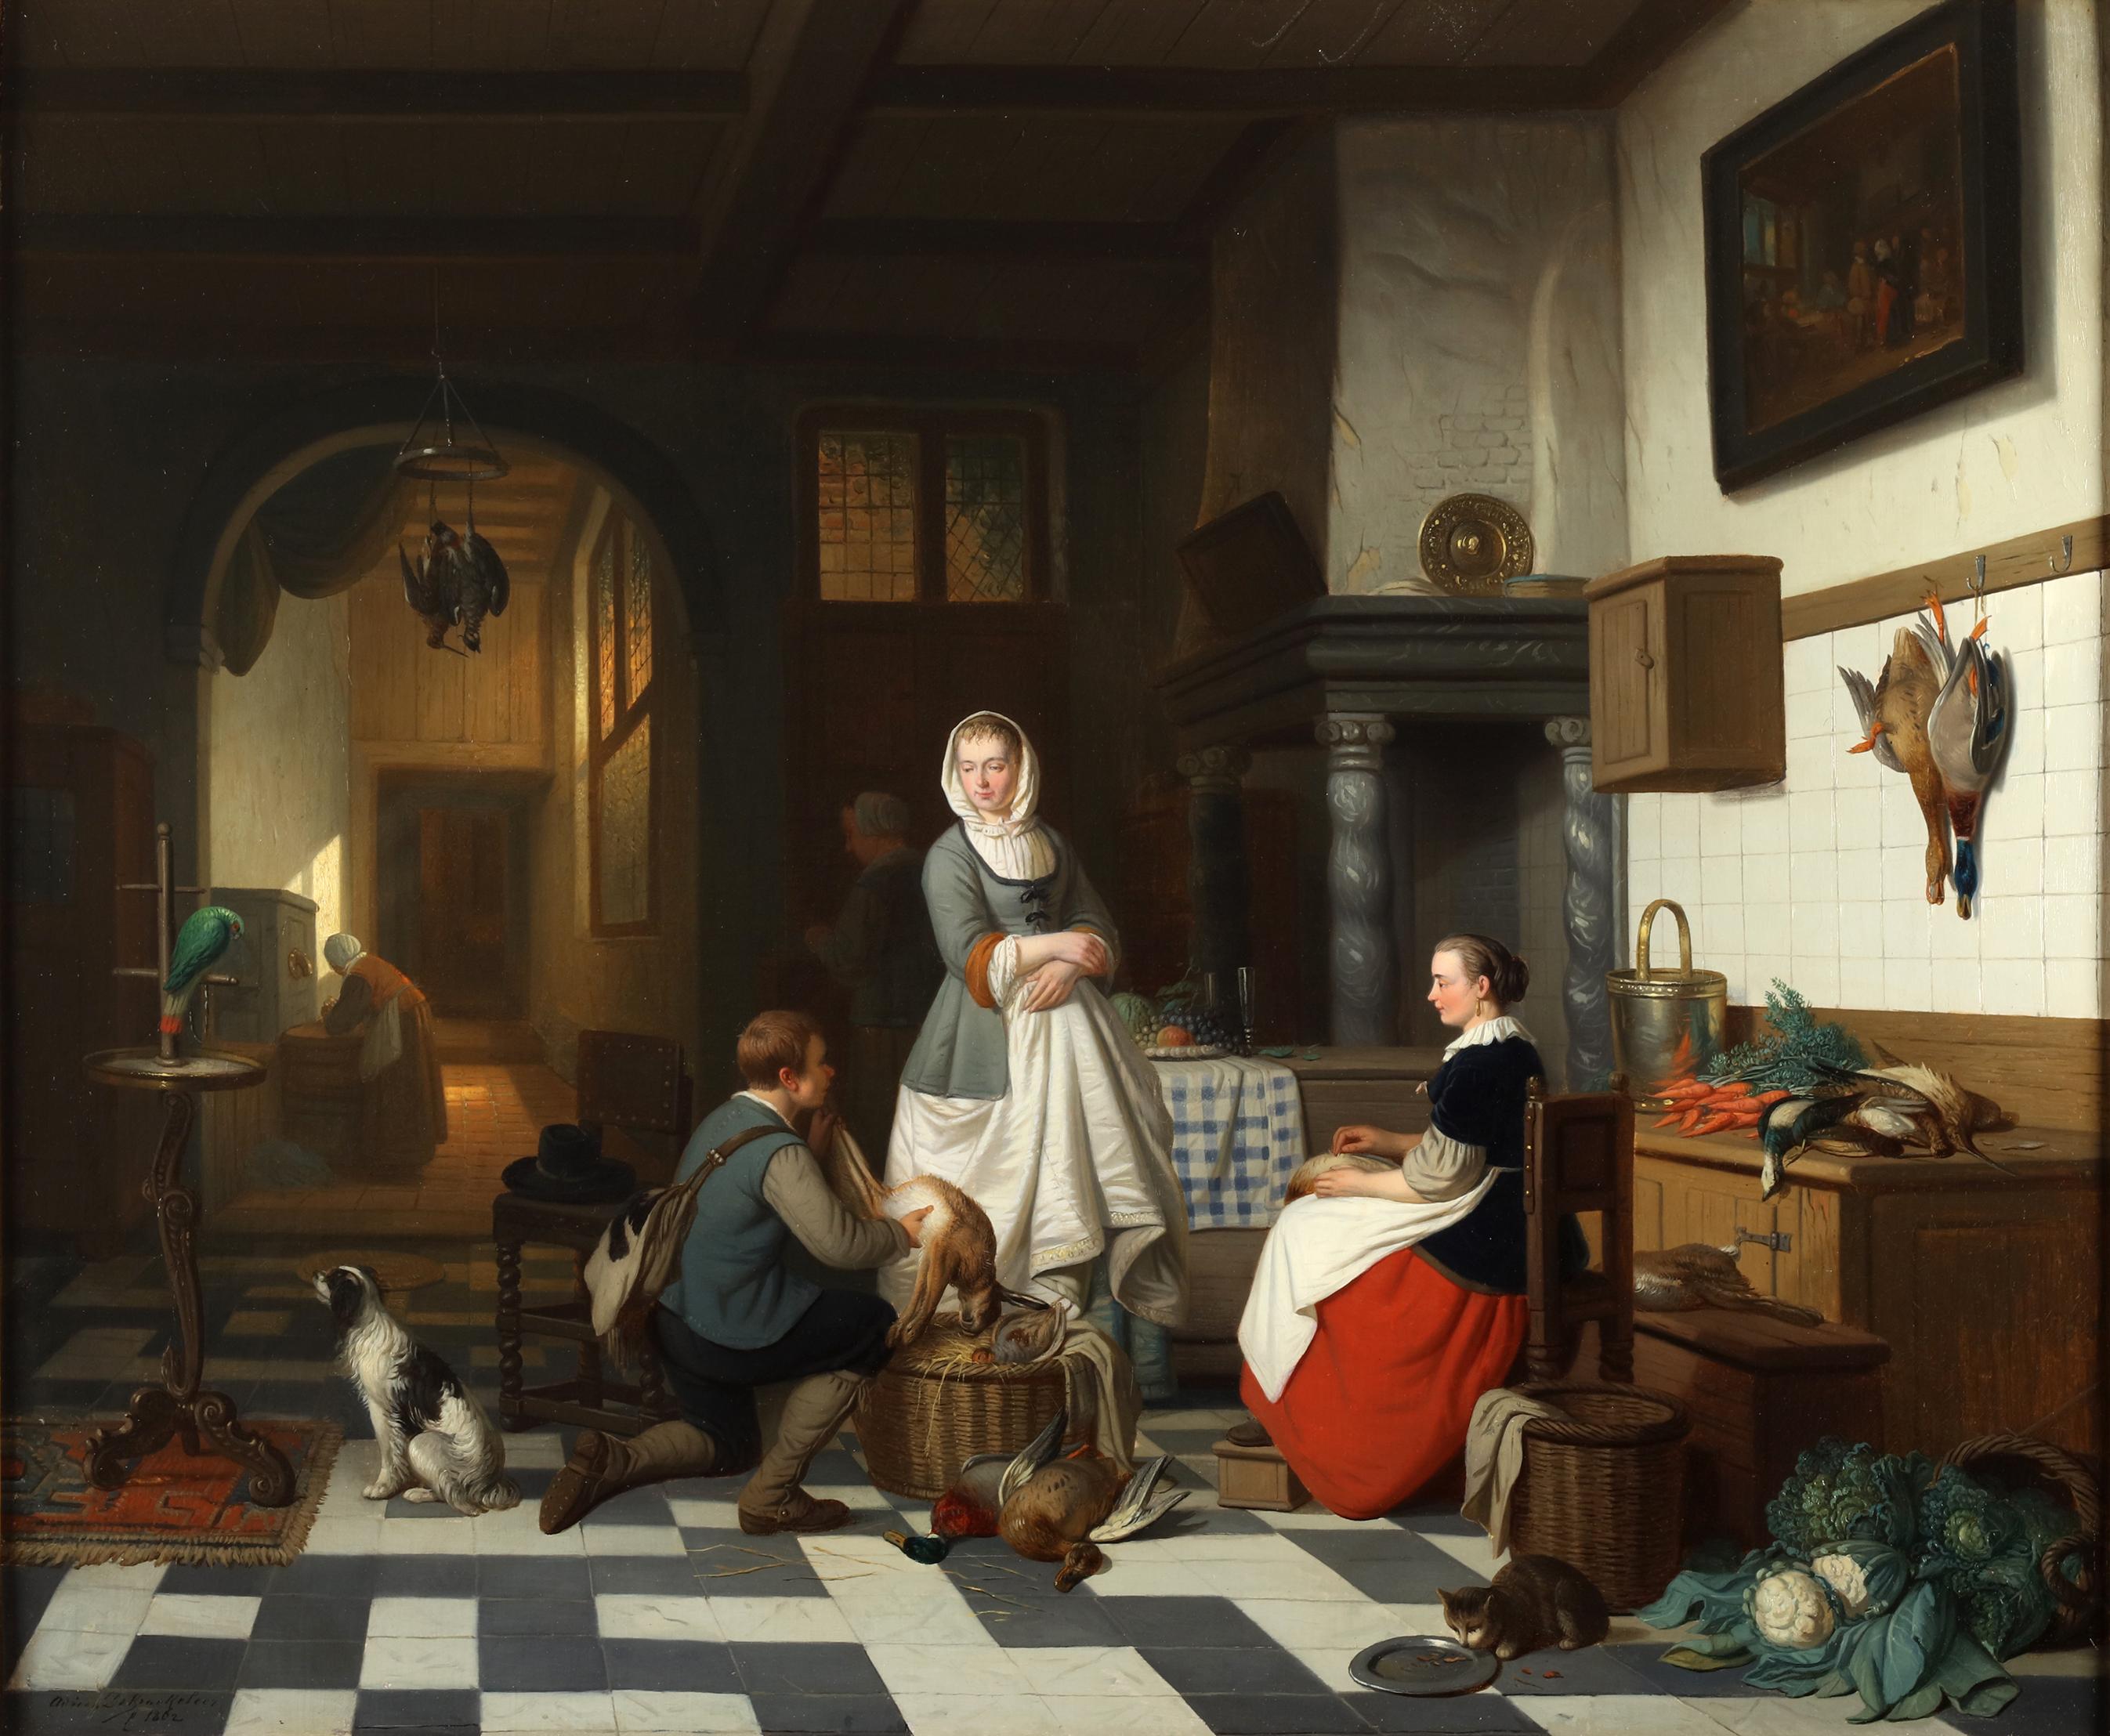 Öl auf Leinwand

Signiert unten links: "Adriaan De Braekeleer, 1862".

Auf dem Gemälde von Adriaan de Braekeleer wird der rustikale Charme eines Kücheninterieurs mit der Wärme einer Szene voller Häuslichkeit und Fülle lebendig. Im Mittelpunkt dieses